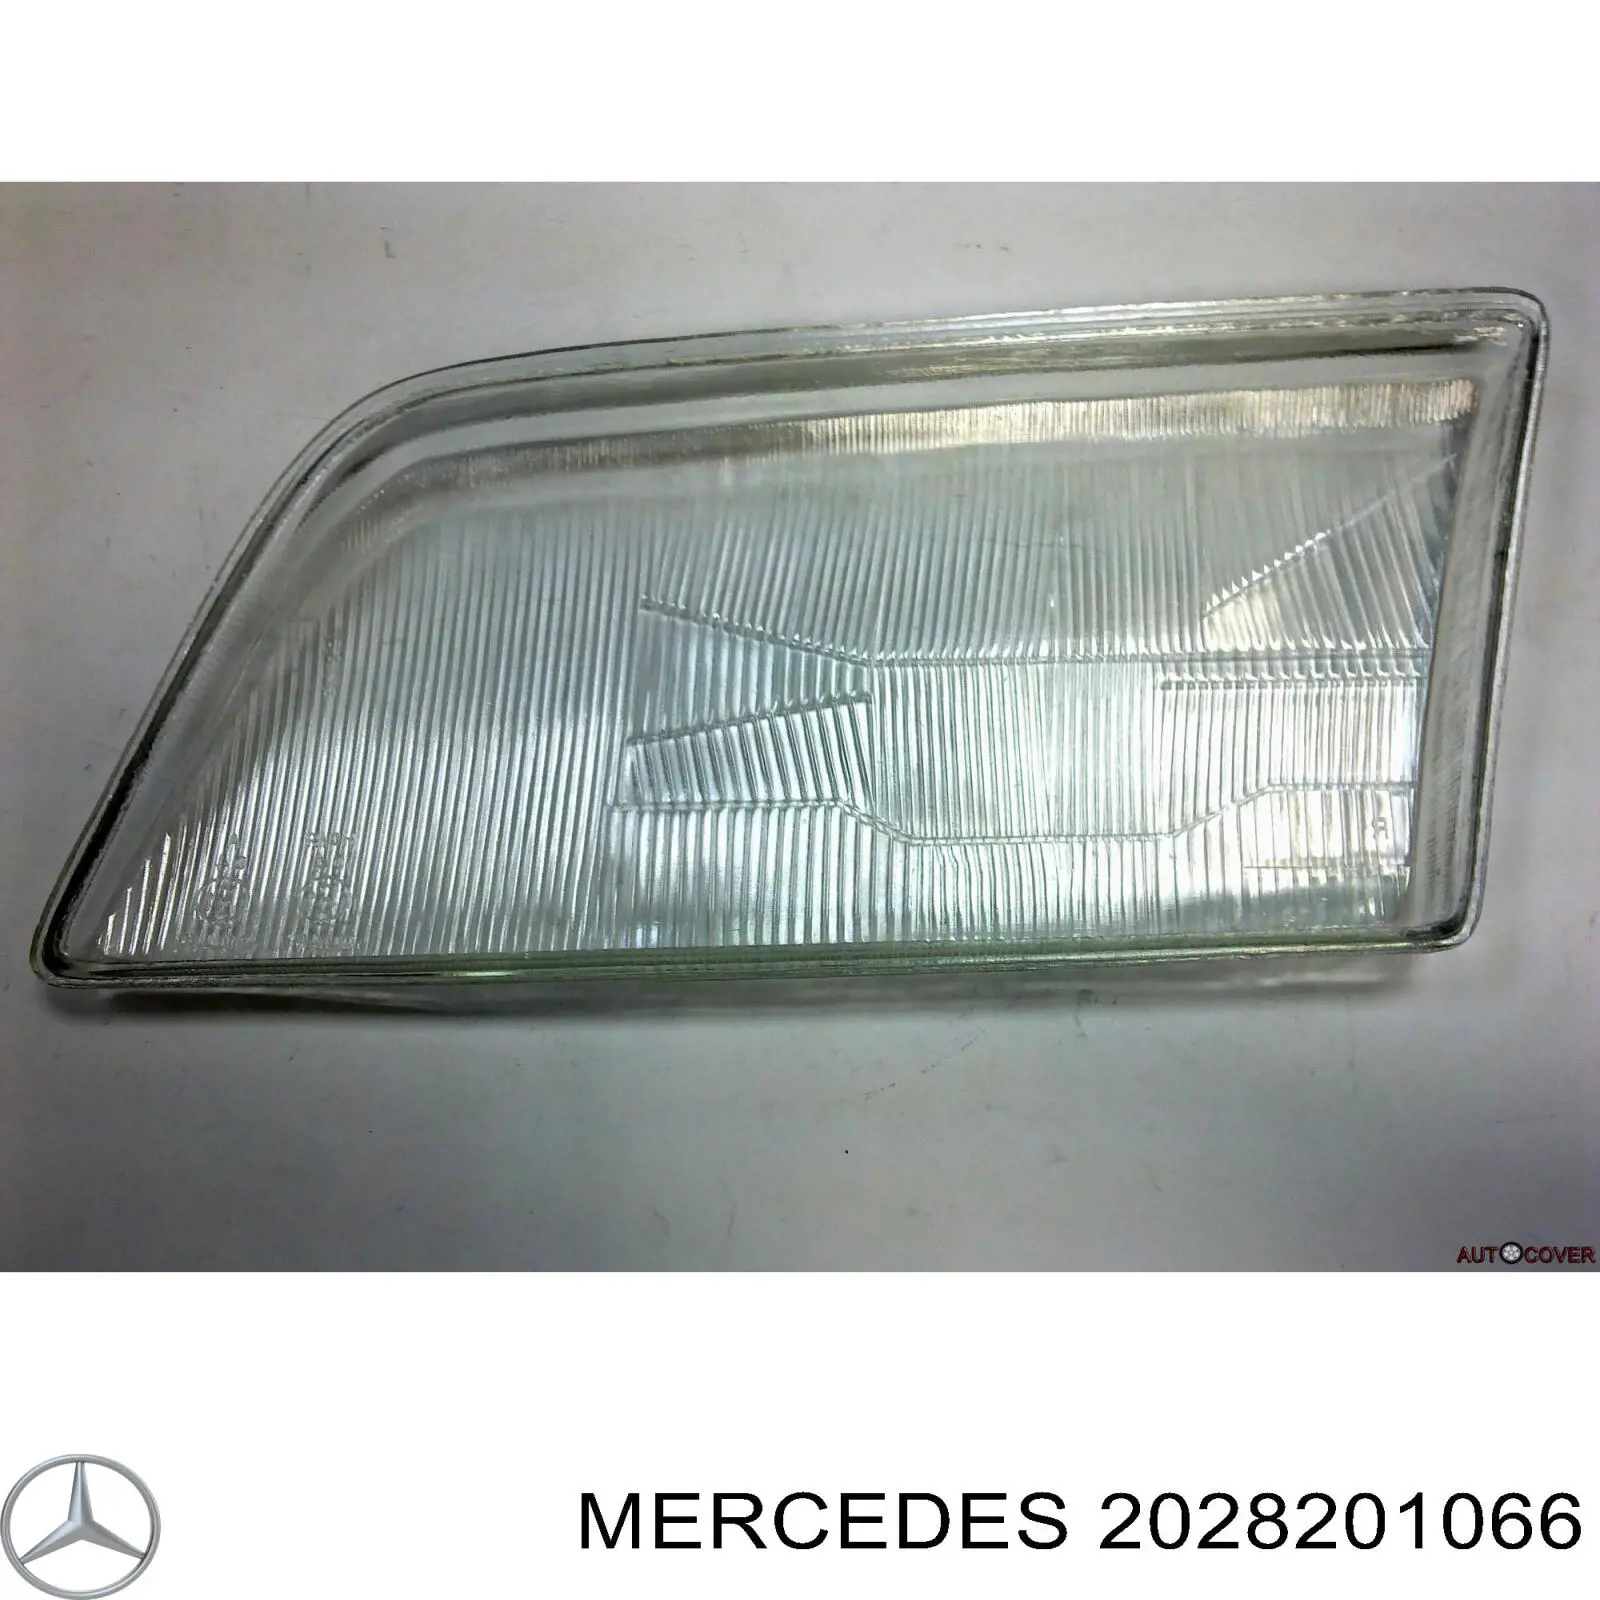 2028201066 Mercedes cristal de faro derecho